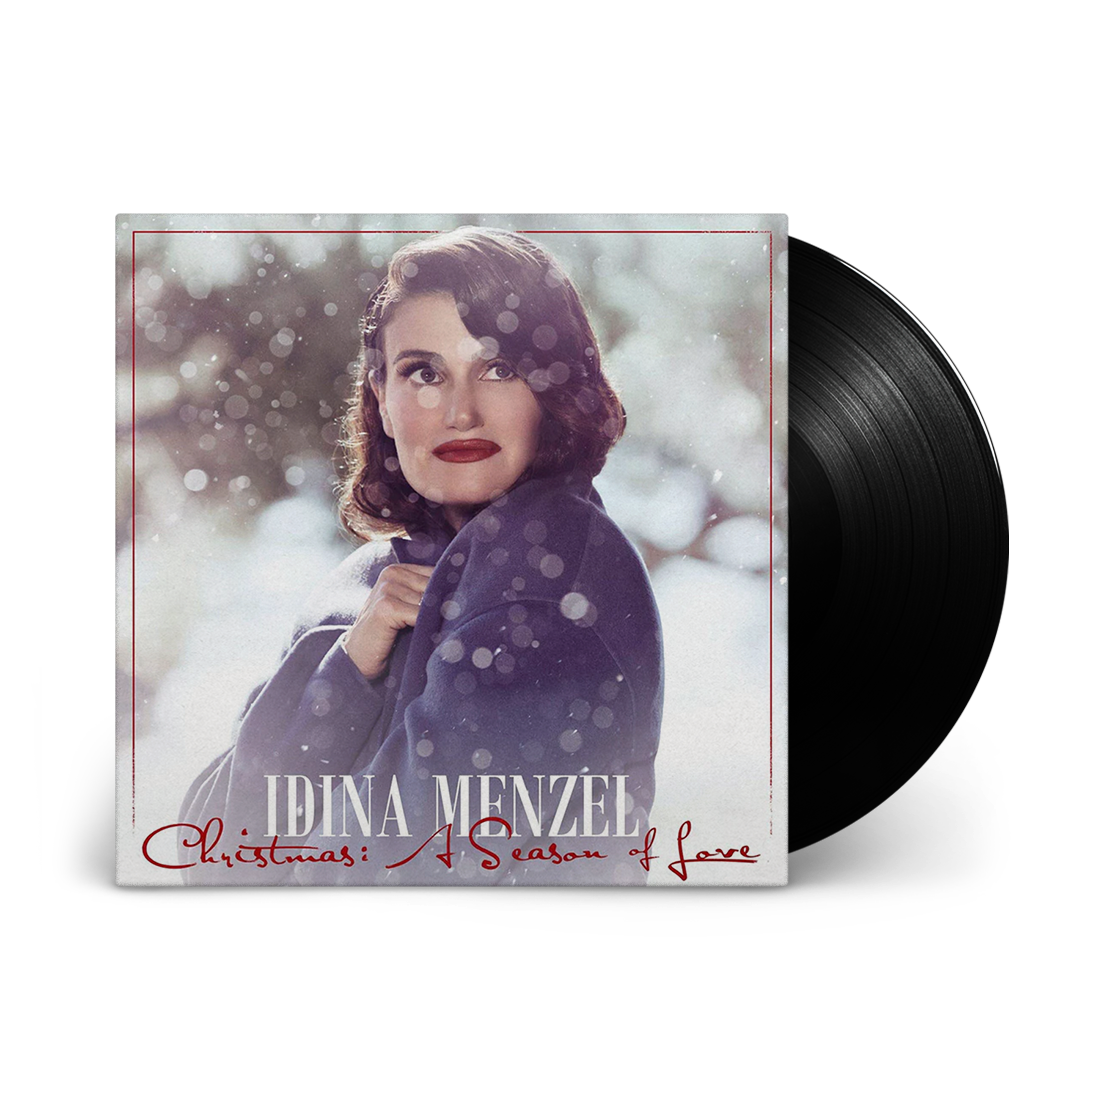 Idina Menzel - Christmas - A Season Of Love: Vinyl LP